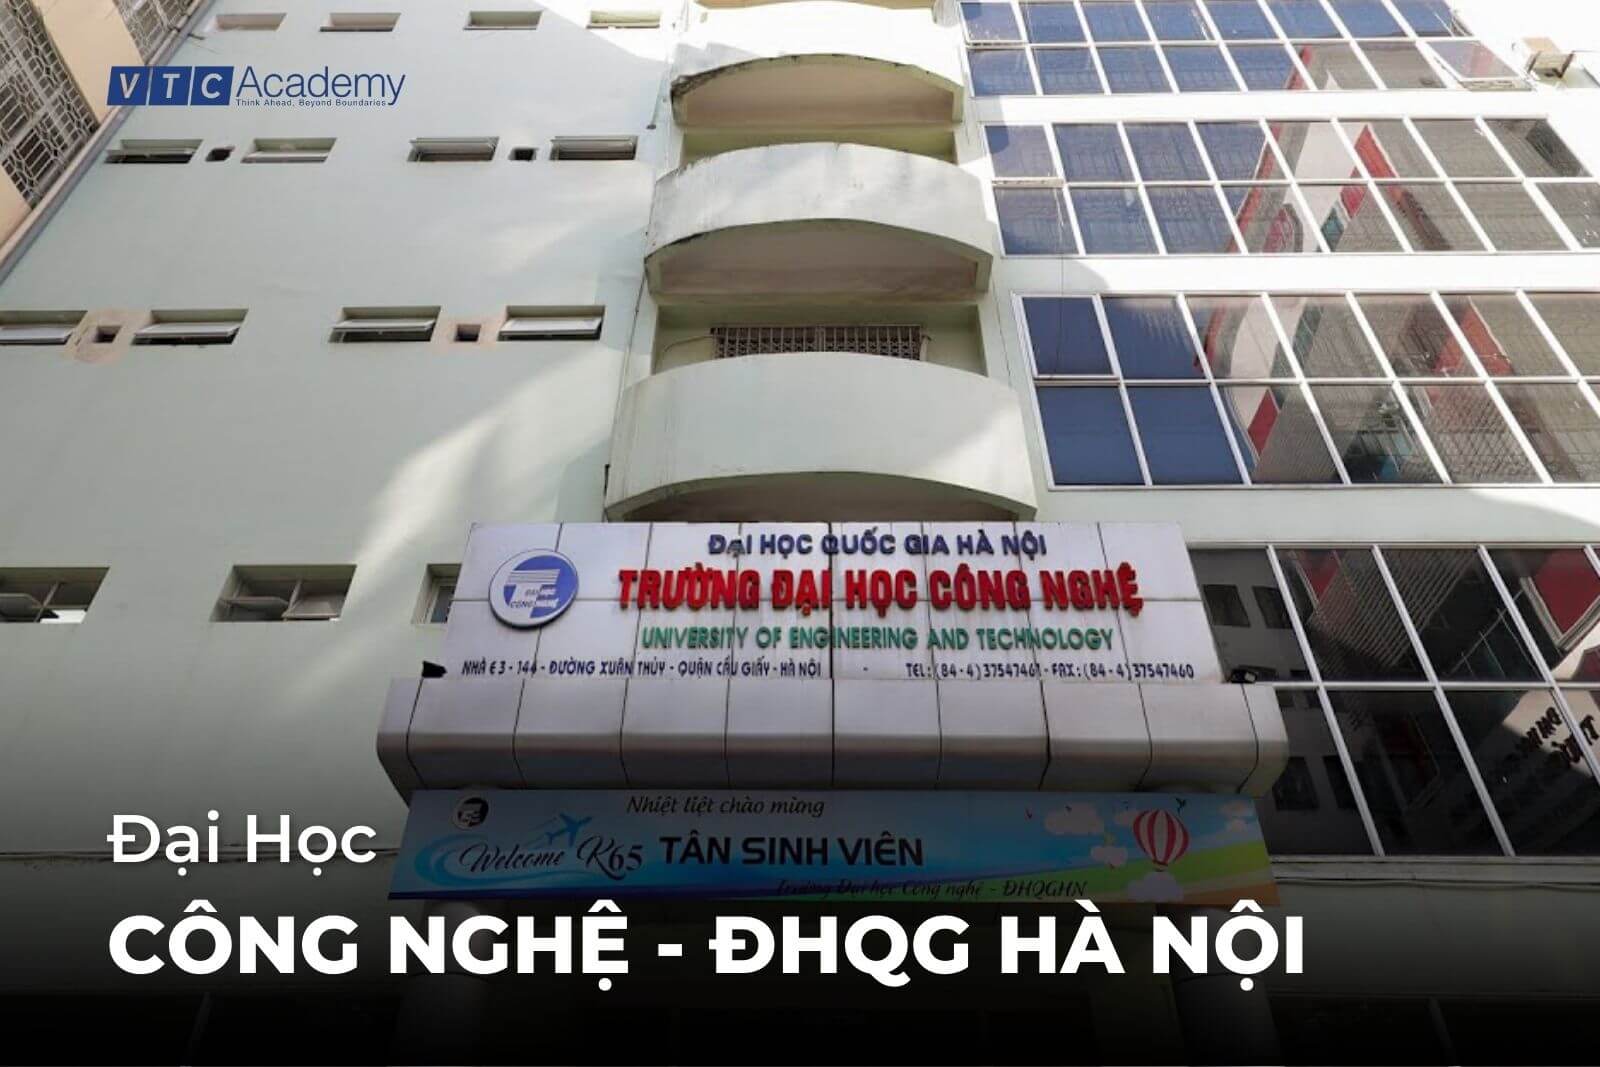 Đại học Công nghệ - ĐHQG Hà Nội